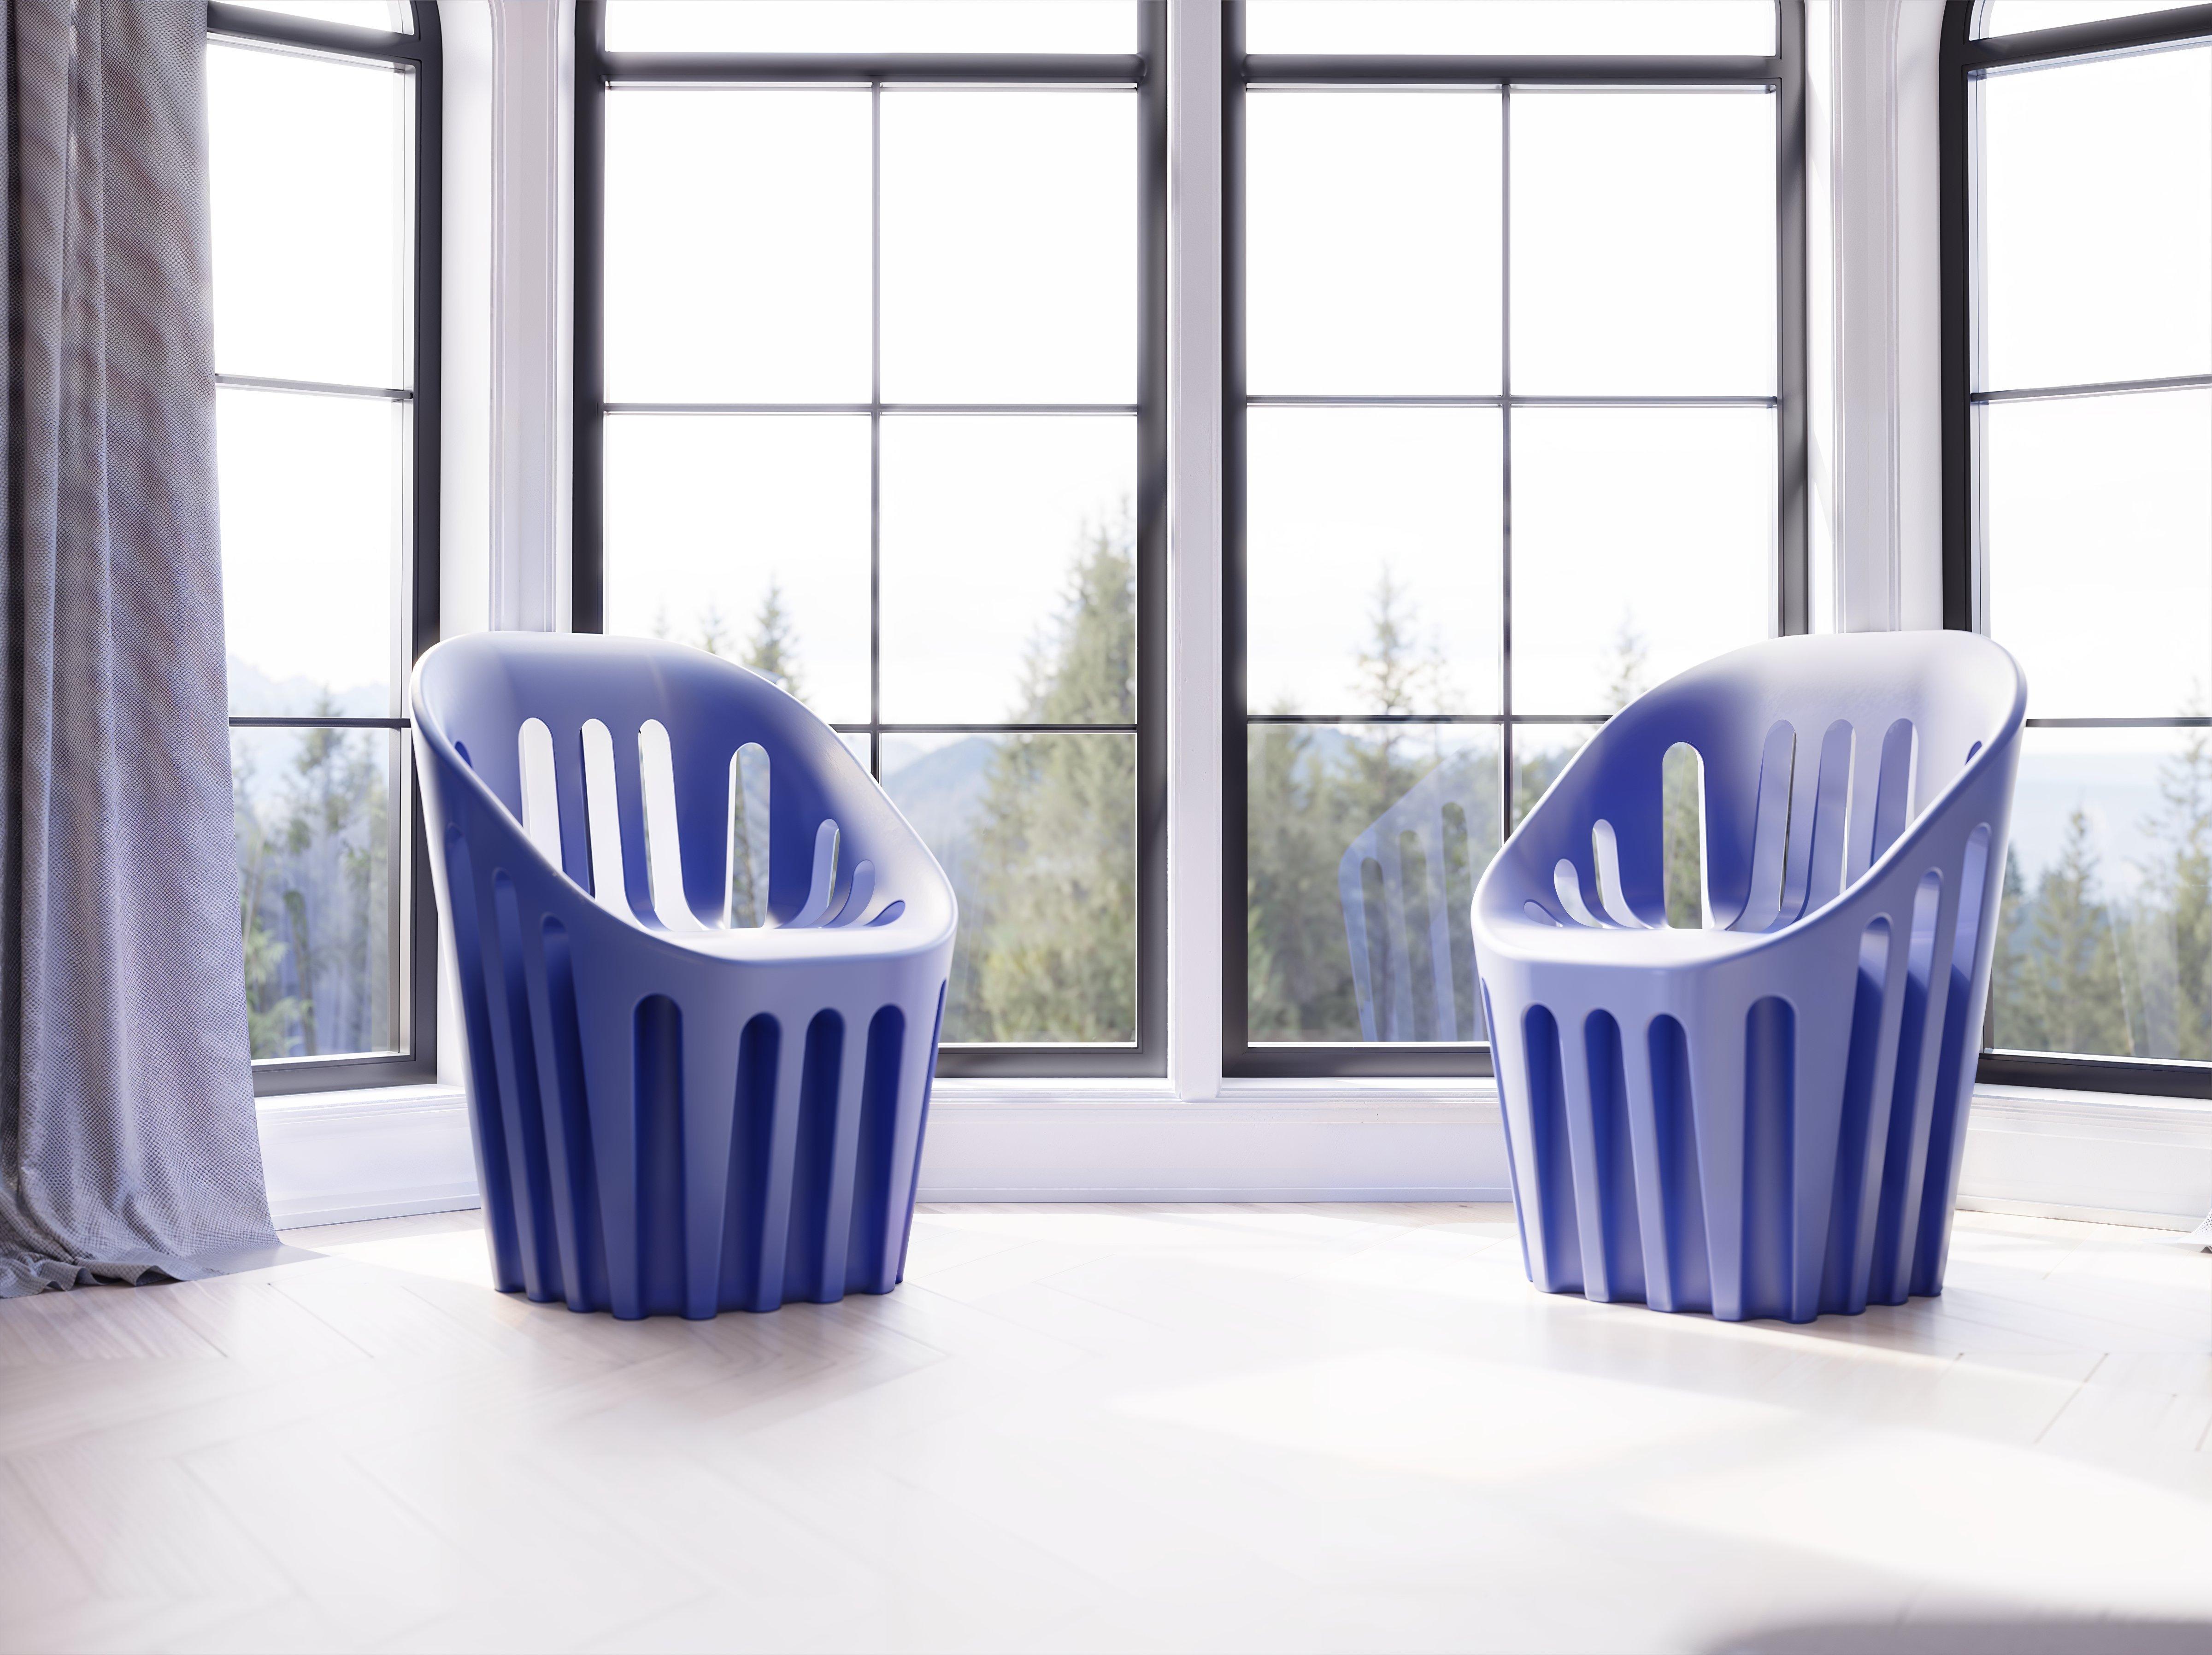 Argil Grauer Coliseum-Stuhl von Alvaro Uribe
Abmessungen: T 65 x B 66 x H 86 cm. Sitzhöhe: 45 cm.
MATERIALEN: Polyethylen.
Gewicht: 11 kg.

Erhältlich in verschiedenen Farbvarianten. Dieses Produkt ist für die Verwendung im Innen- und Außenbereich